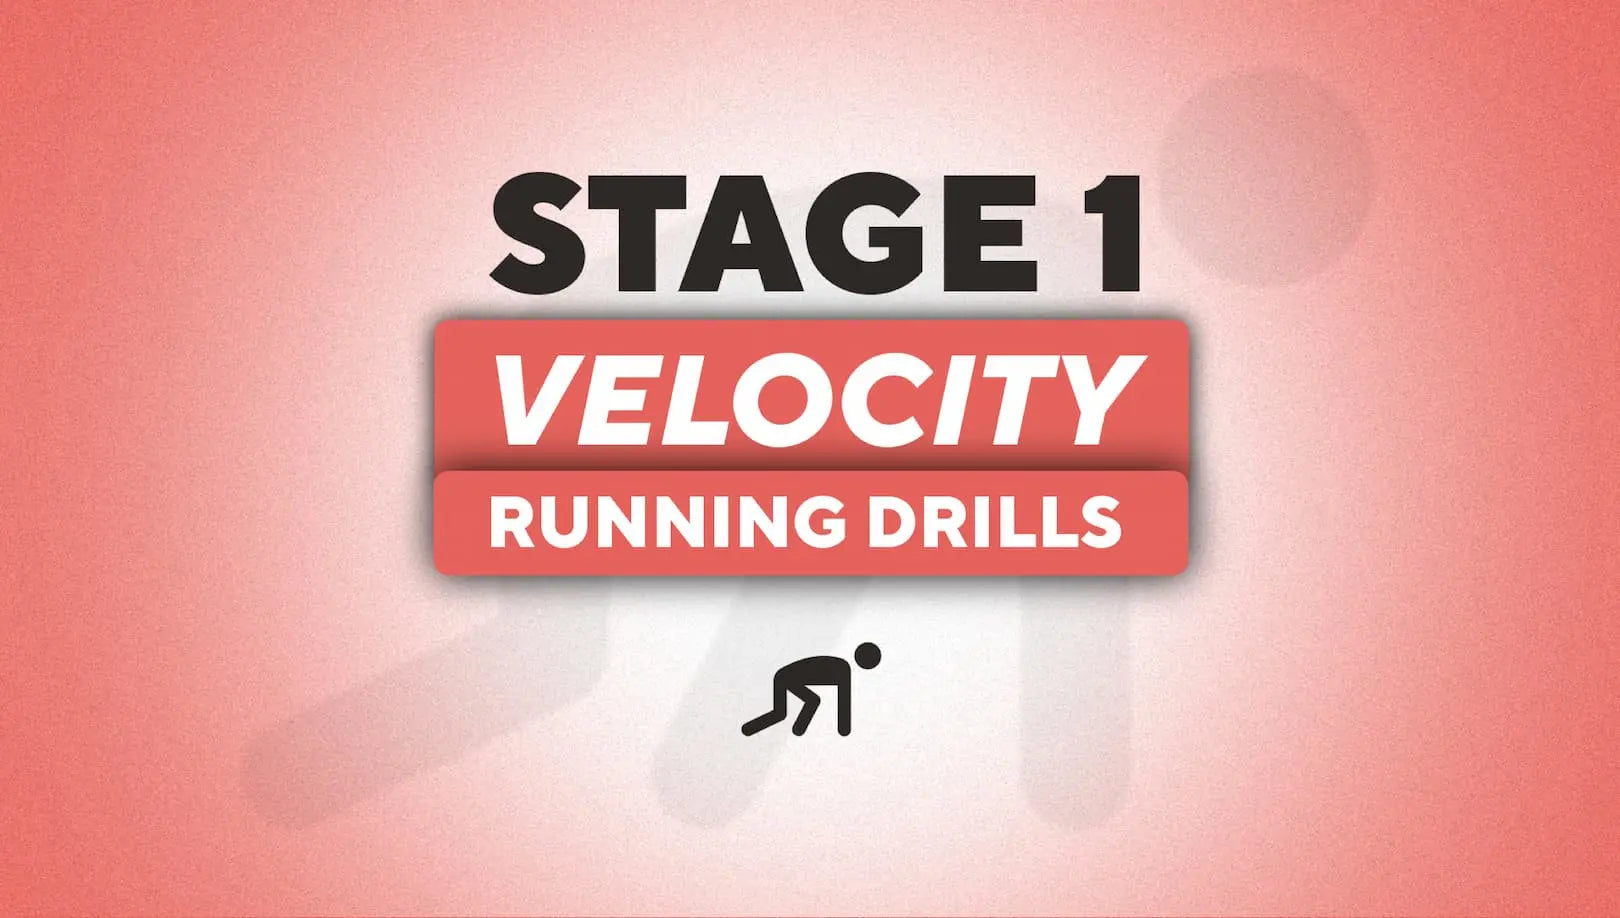 Stage 1 Velocity Running Drills Roam NZ Australia